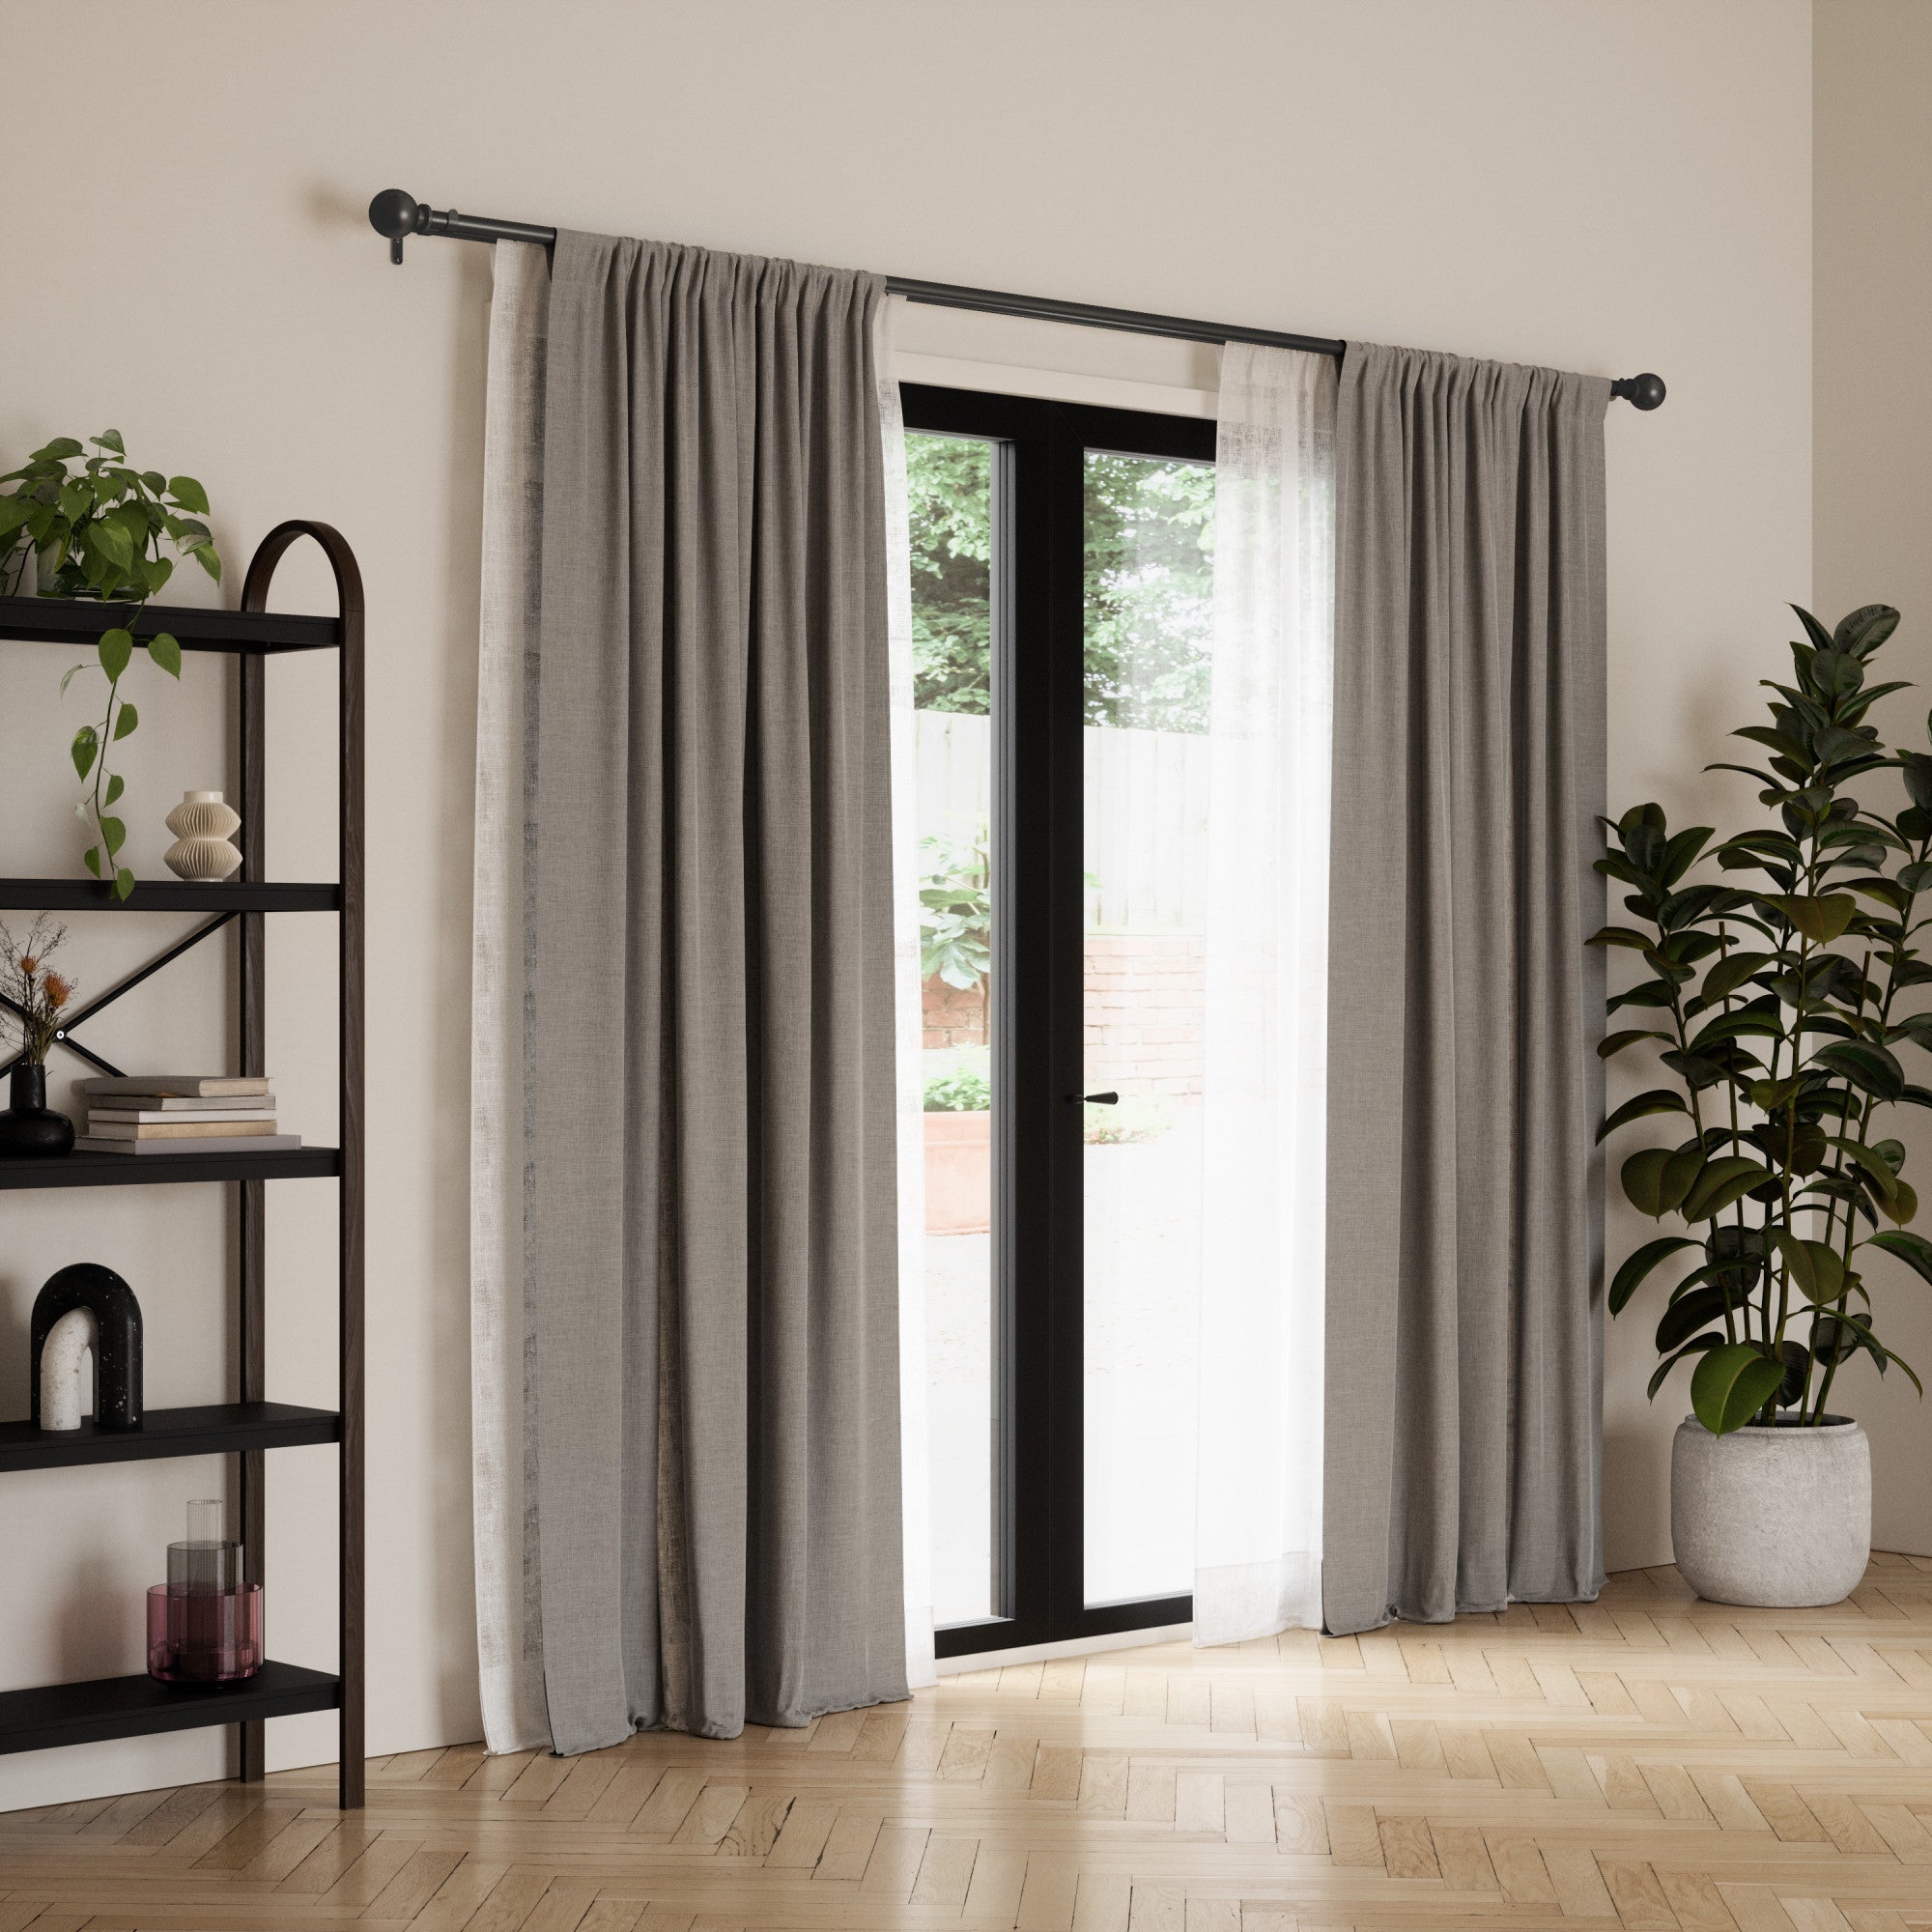 Double Curtain Rods | color: Matte-Black | size: 72-144"""" (183-366 cm) | diameter: 1"""" (2.5 cm)